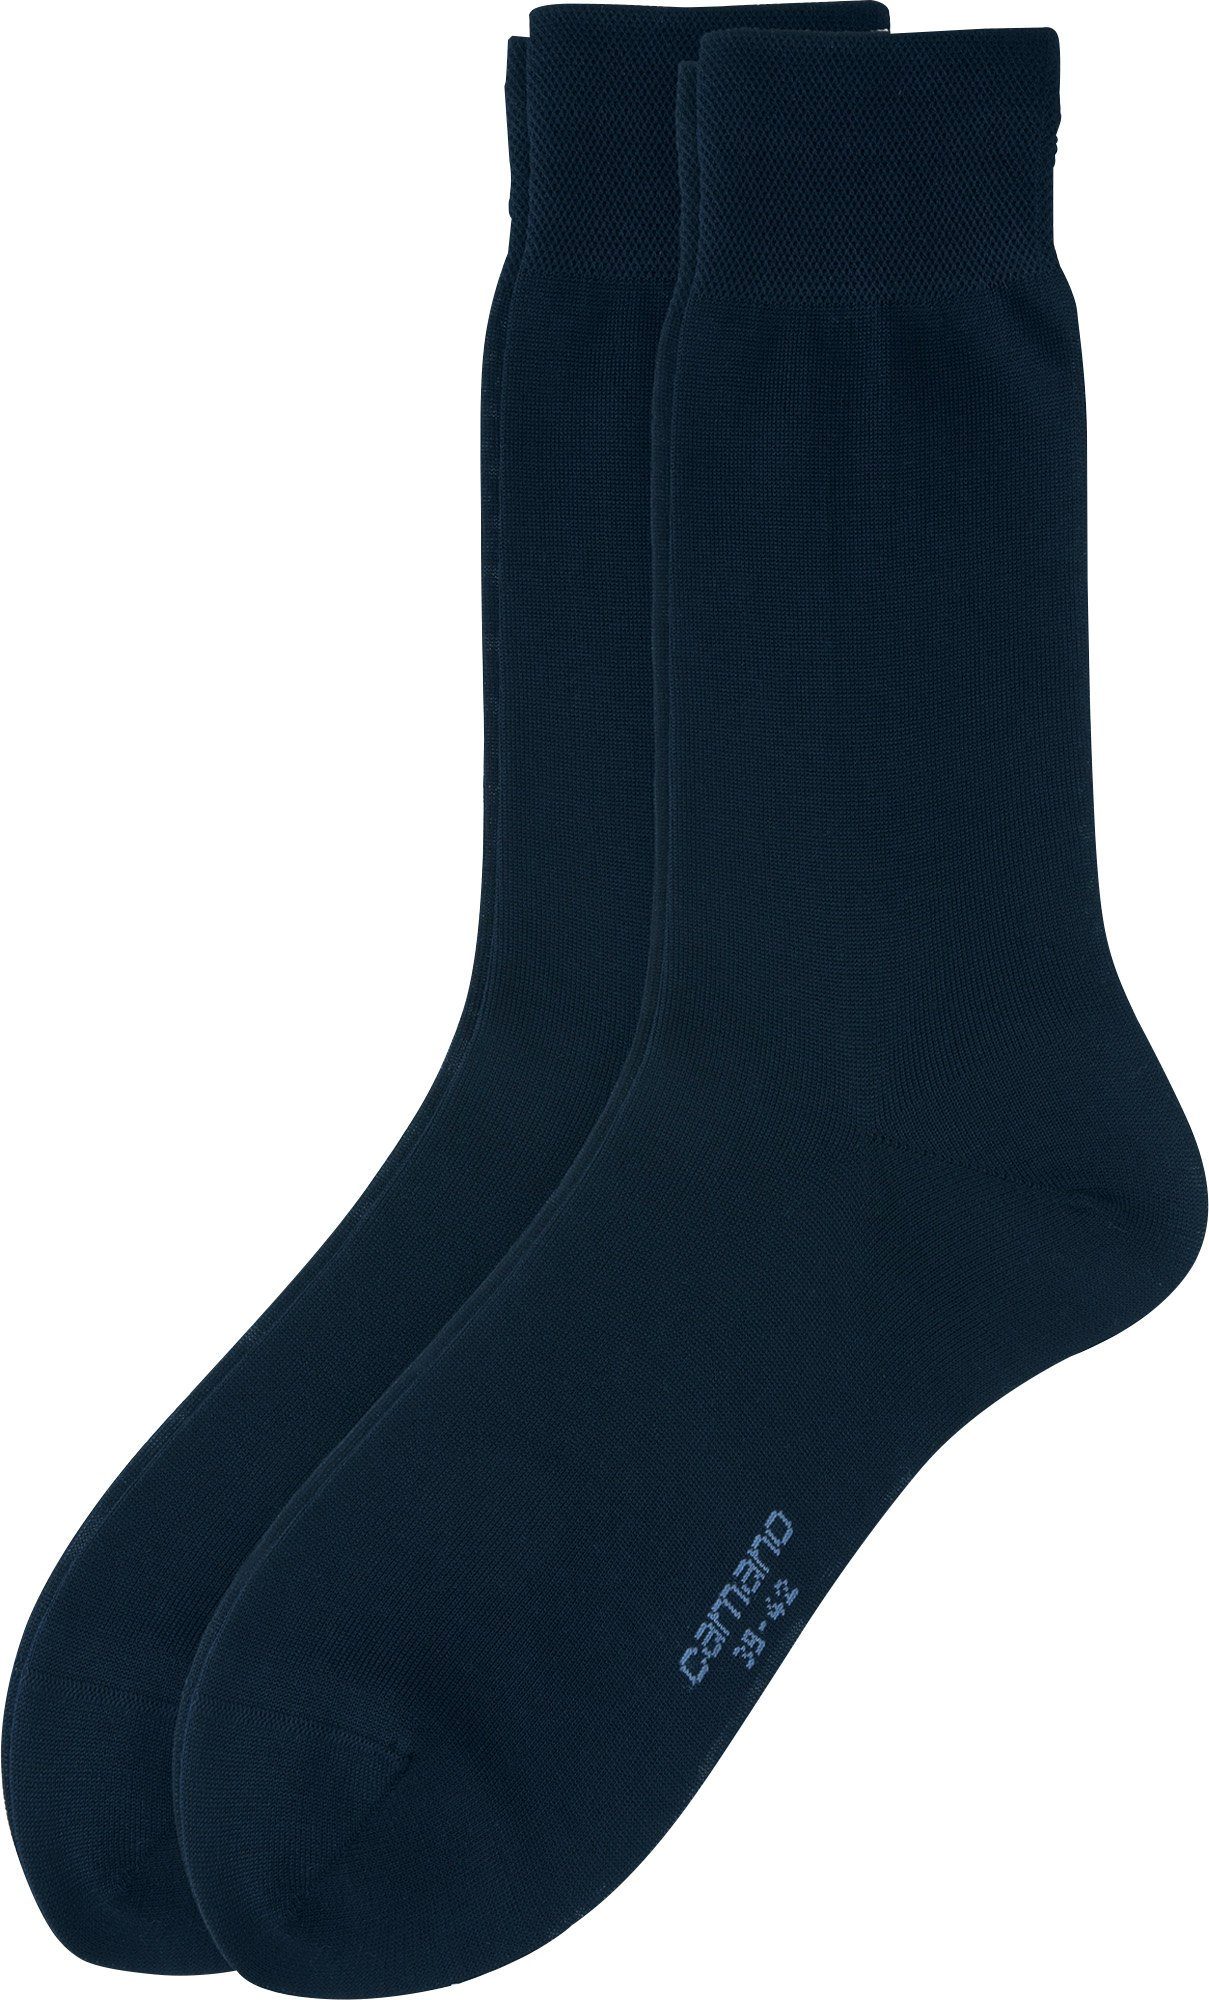 Camano Herren dunkelblau Socken Paar Uni Business-Socken 2